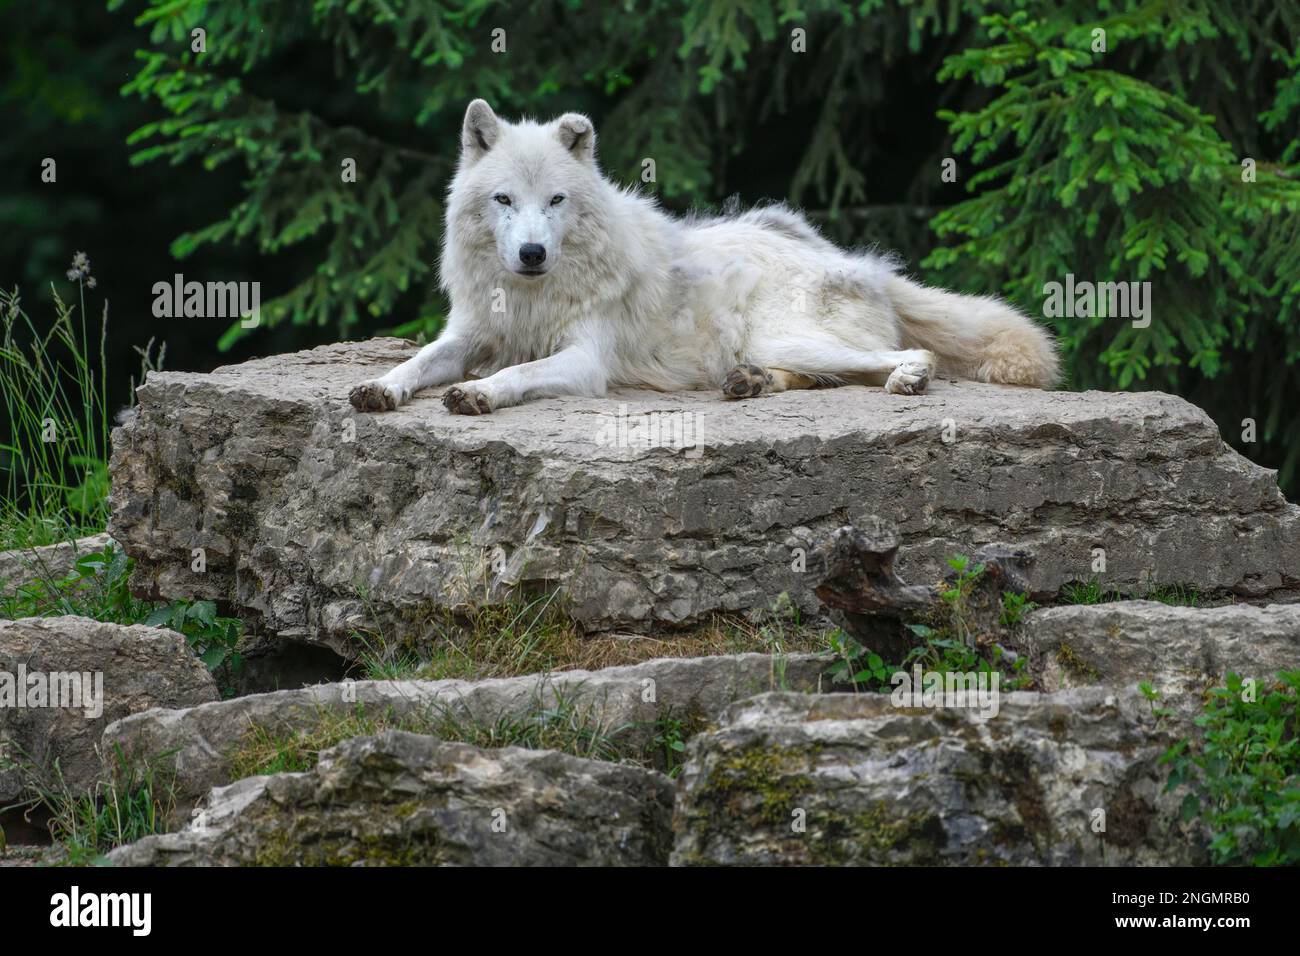 Arctic wolf (Canis lupus arctos), lying on rock, Parc Animalier de Sainte-Croix, Natural Park, near Rhodes, Moselle, Lorraine, France Stock Photo